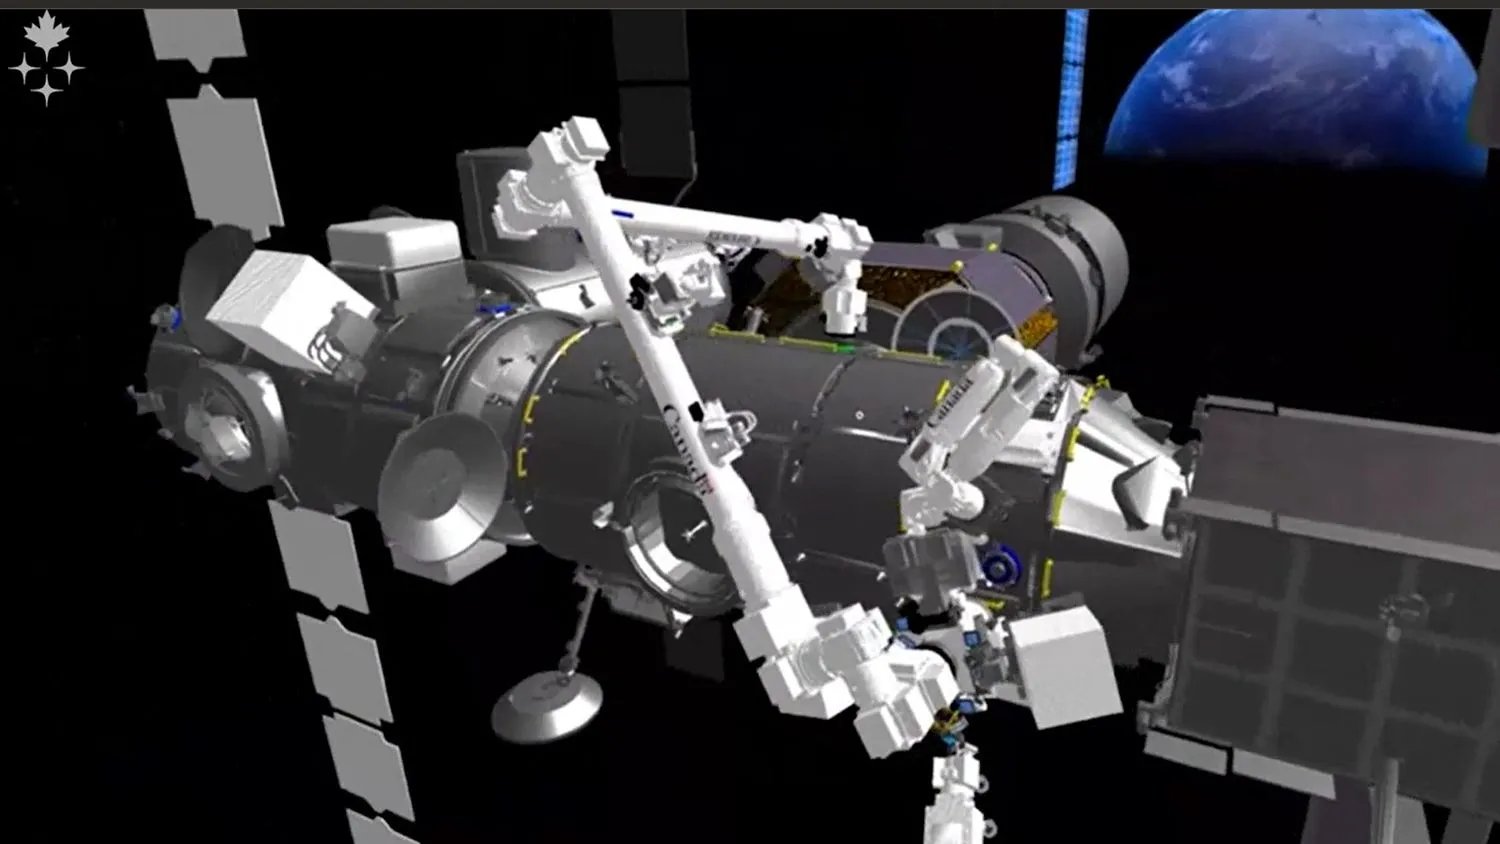 die Module der Gateway-Raumstation und der Canadarm3 in einer simulierten Umgebung. Im Hintergrund befindet sich eine große Erde zu Anschauungszwecken